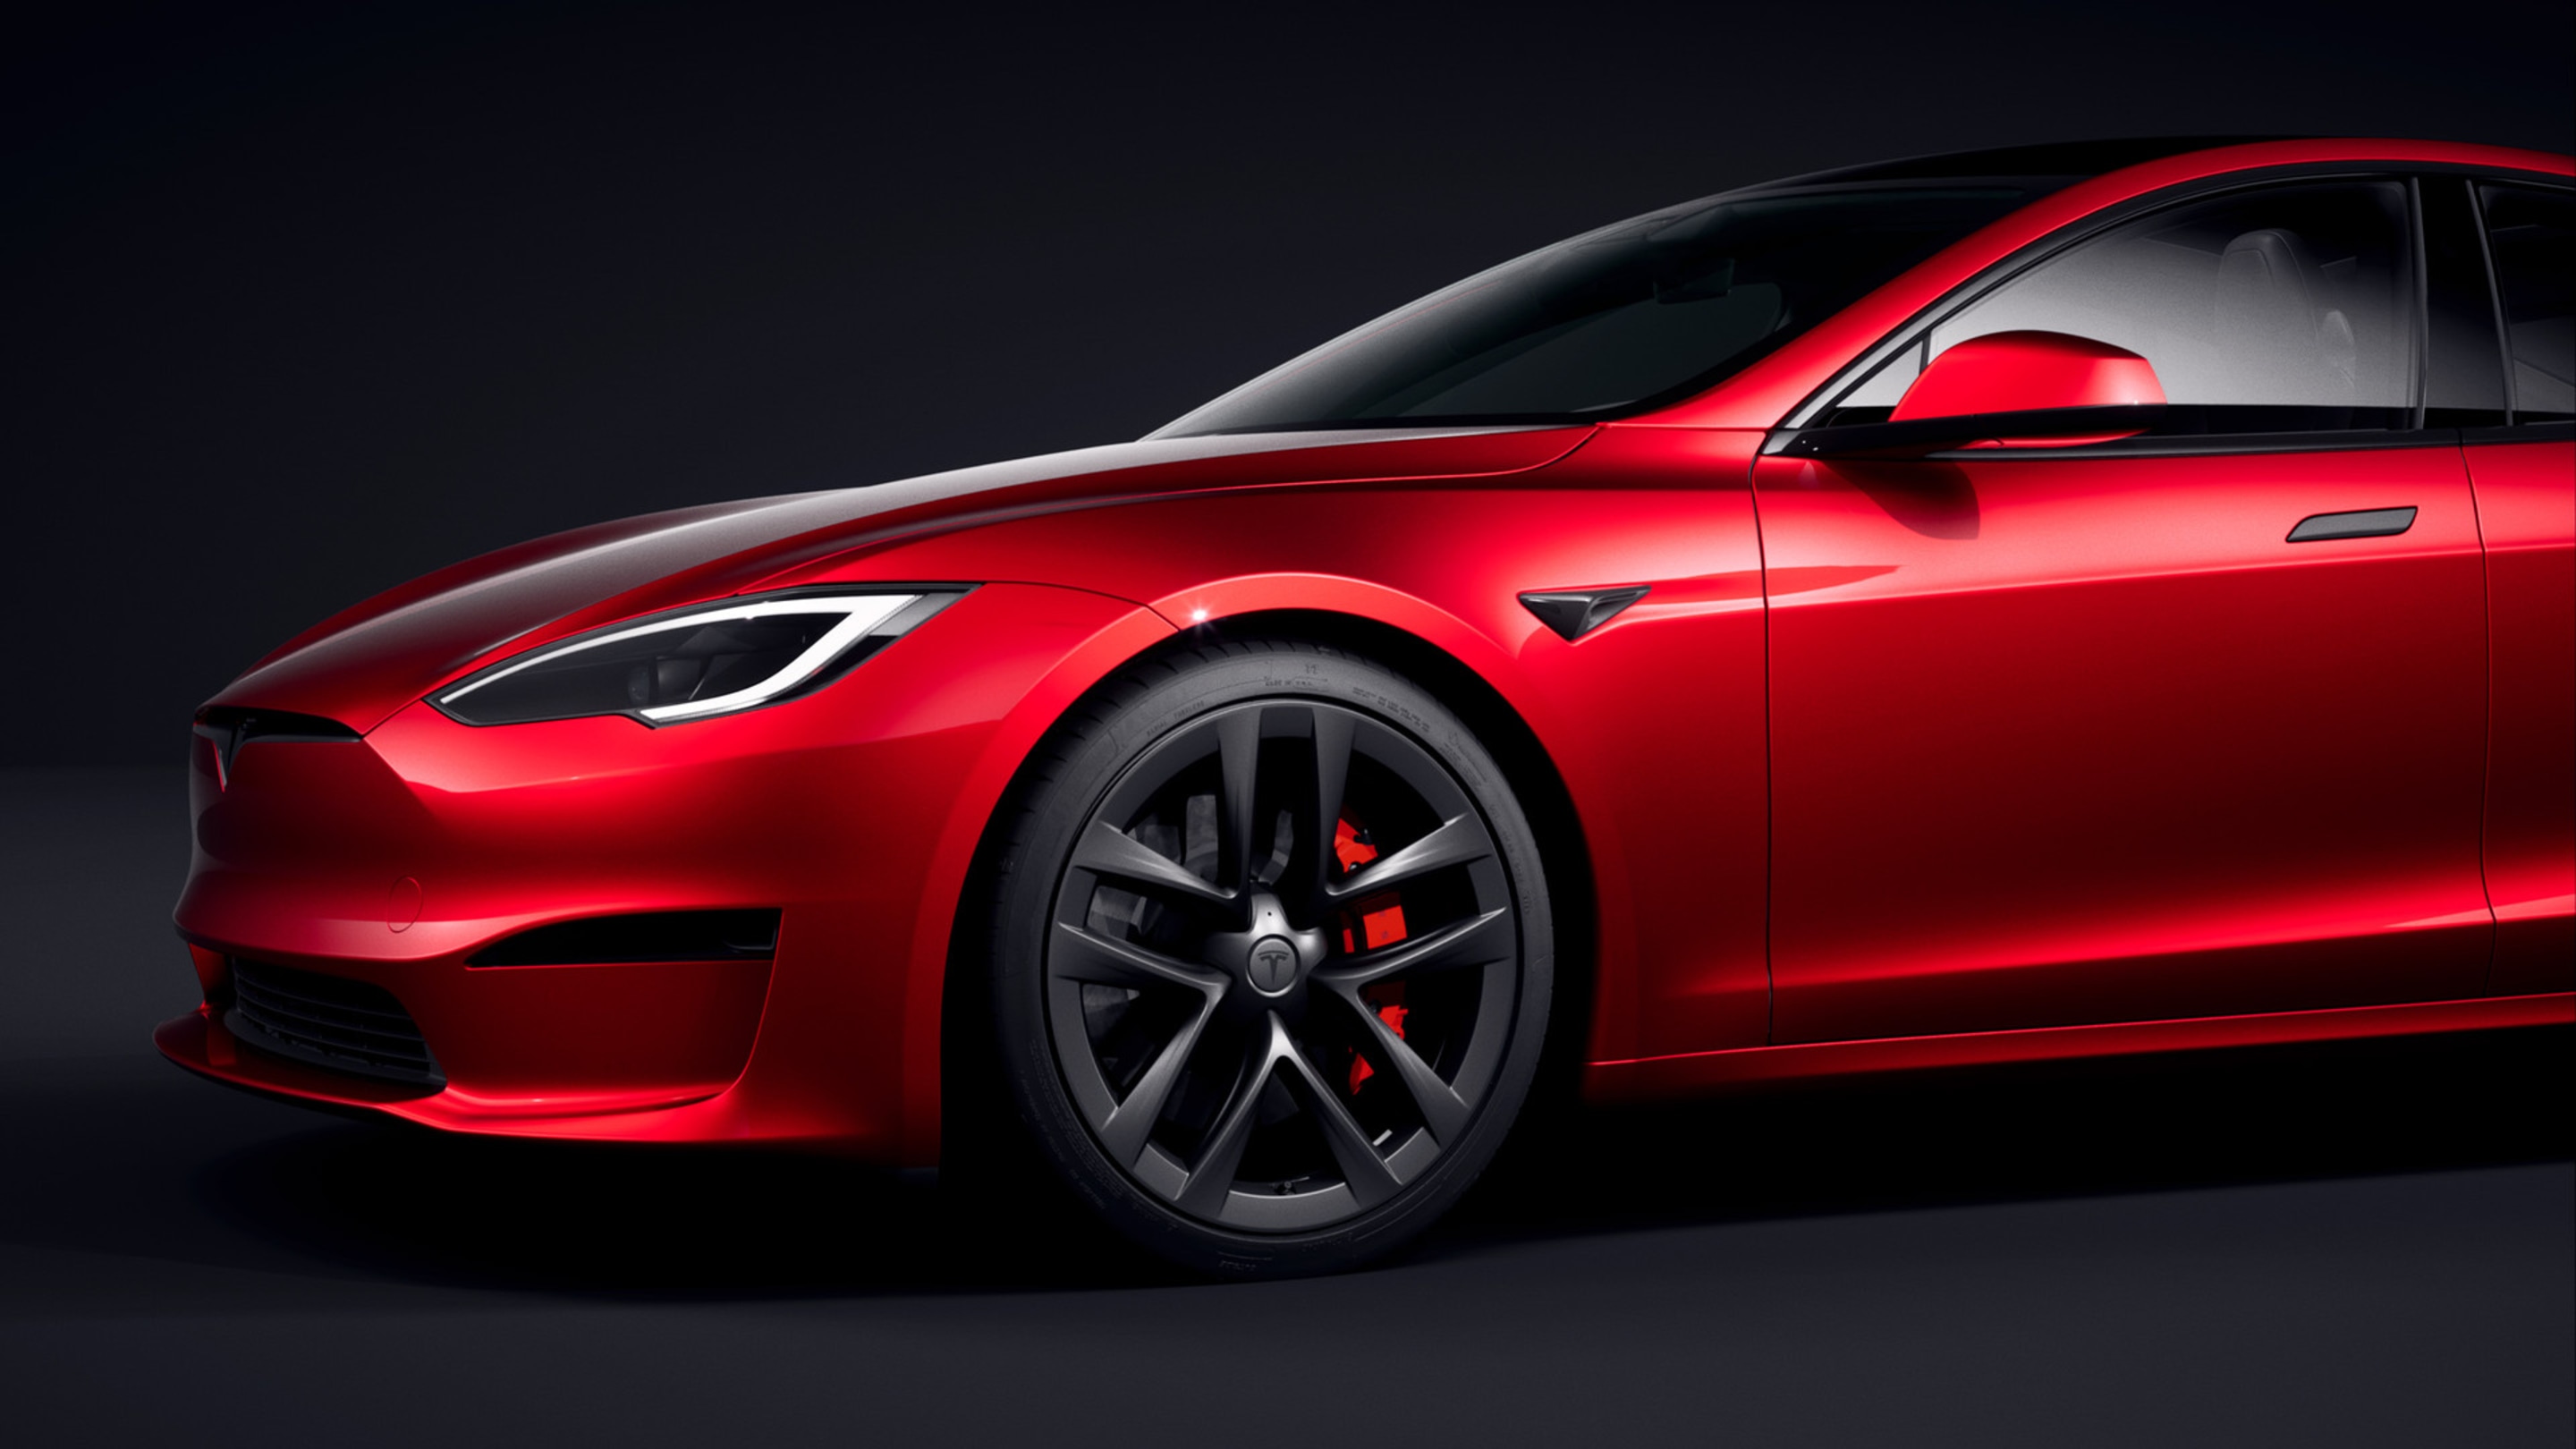 Vue de face de la Model S rouge